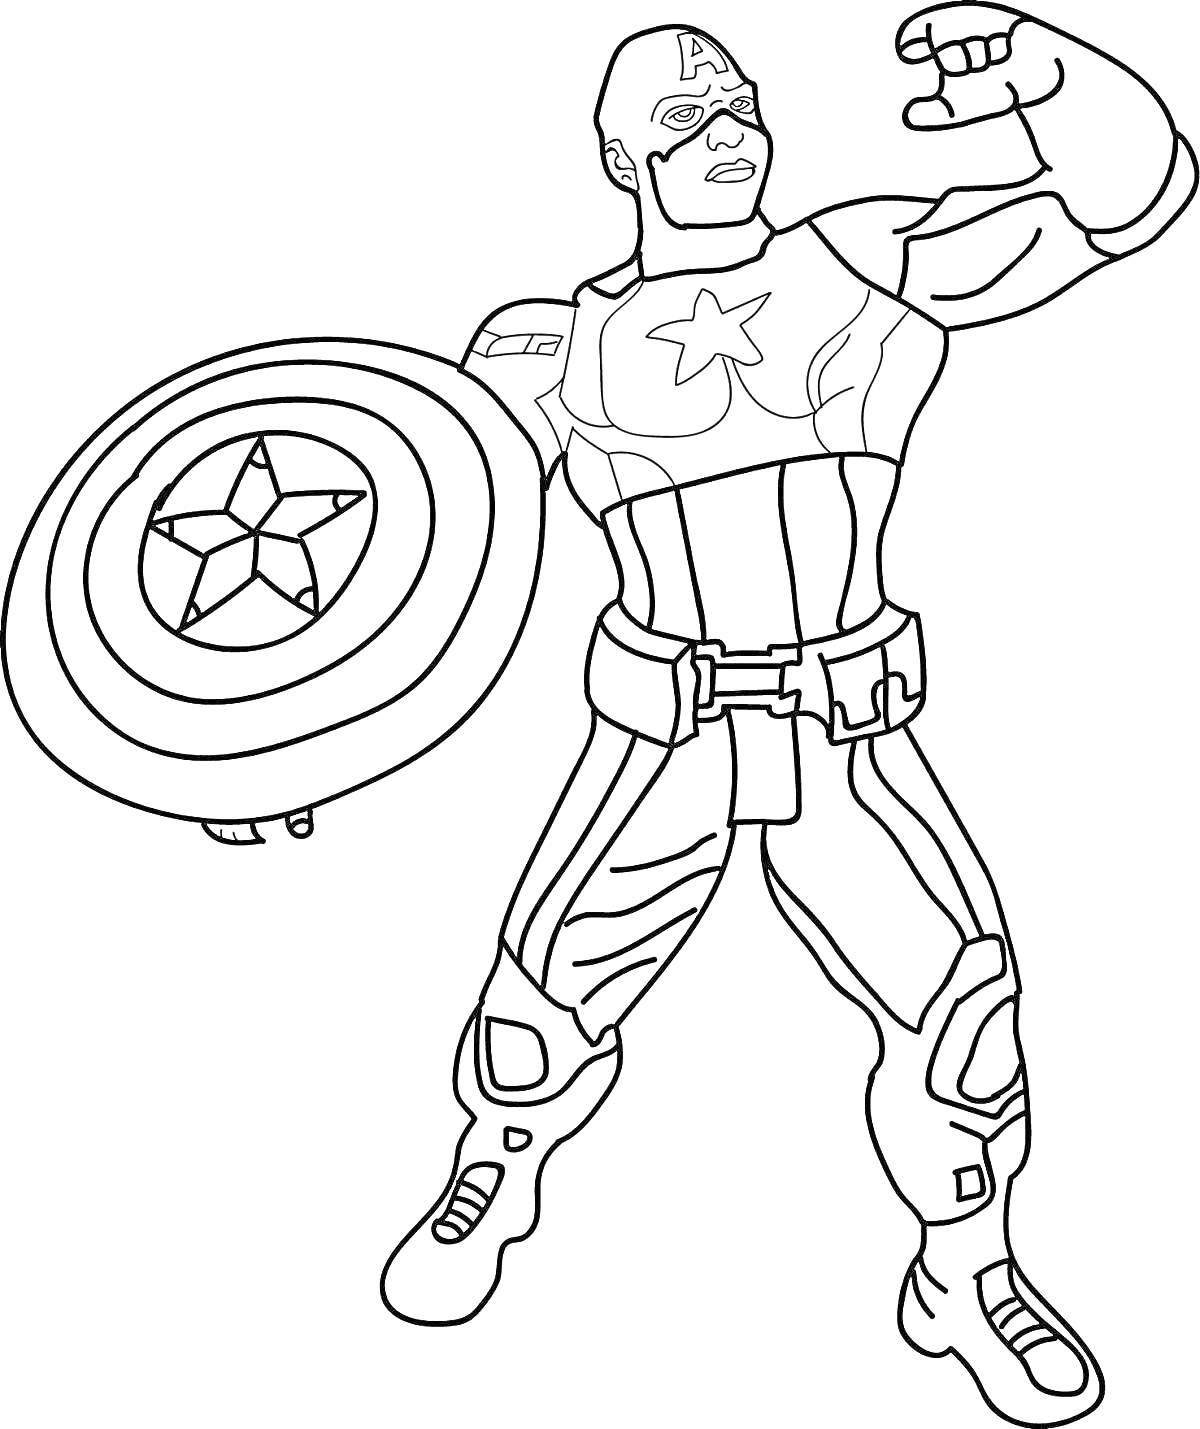 Раскраска Капитан Америка со щитом и поднятой рукой в боевой позе